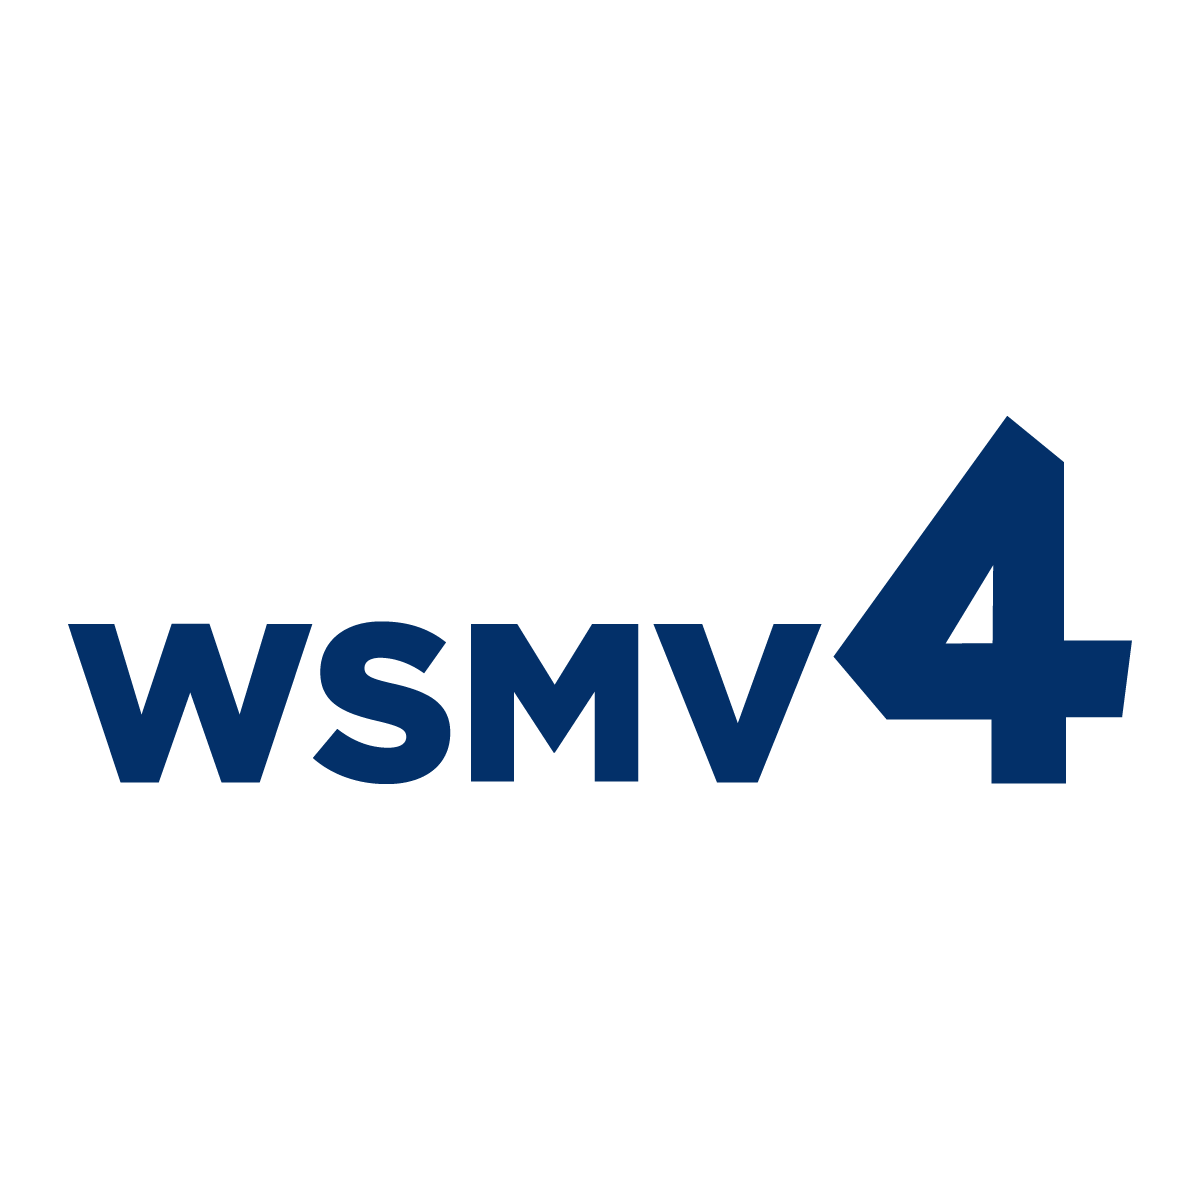 WSMV 4